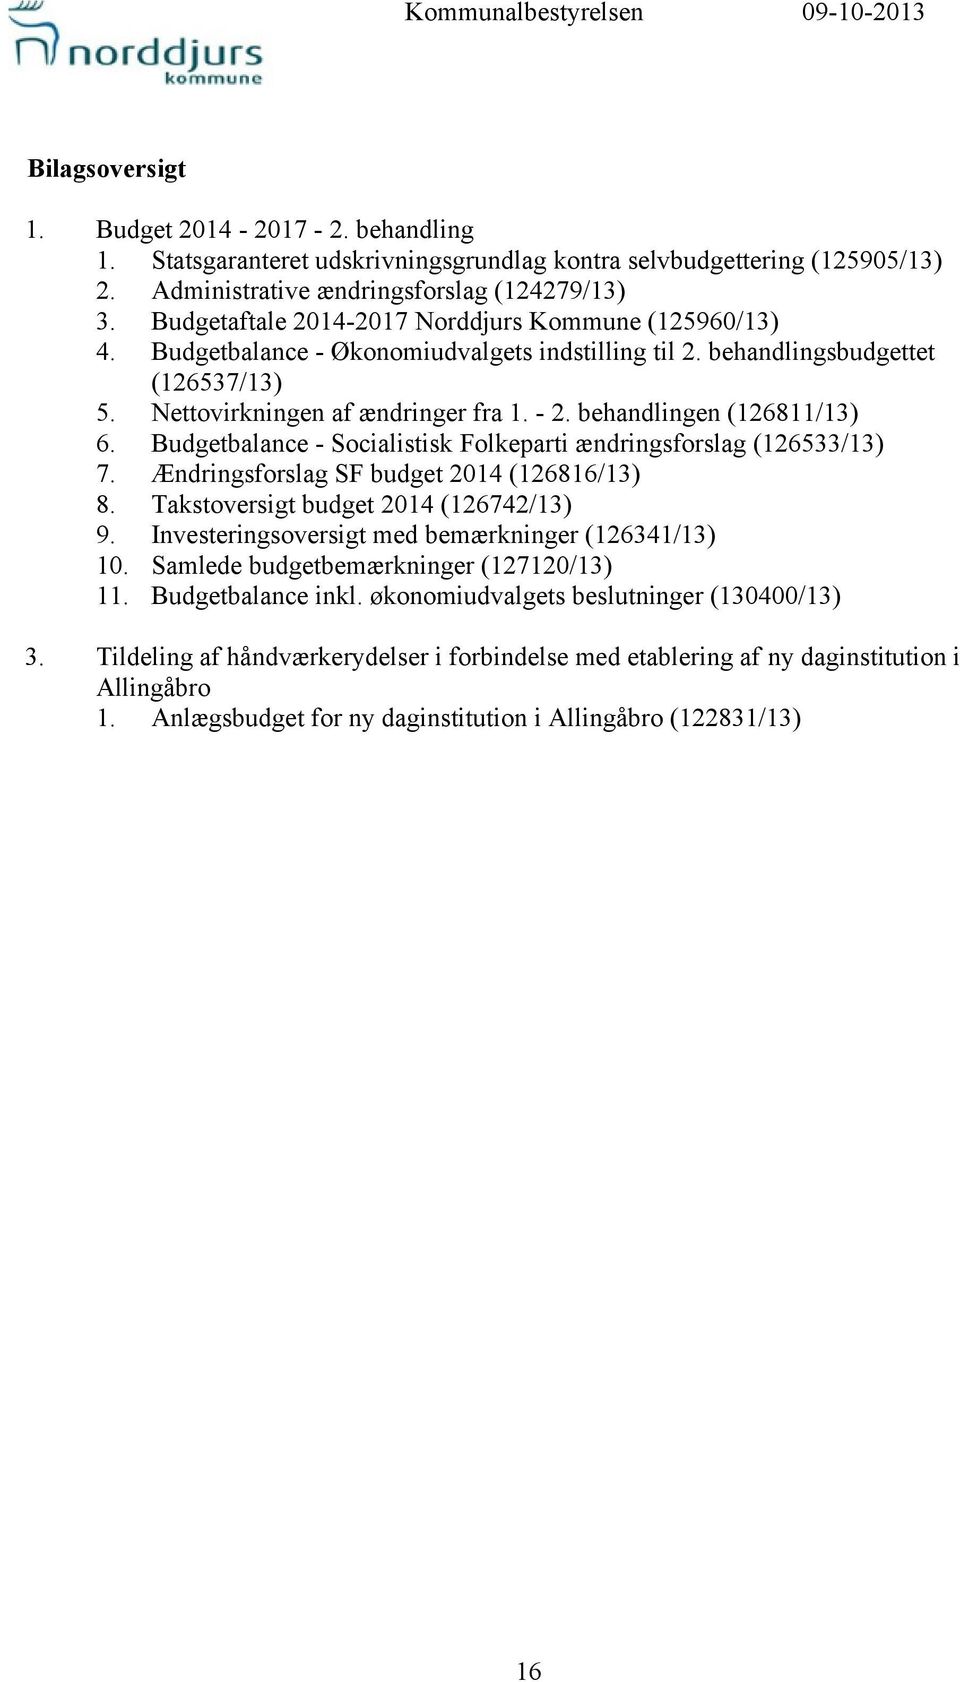 Nettovirkningen af ændringer fra 1. - 2. behandlingen (126811/13) 6. Budgetbalance - Socialistisk Folkeparti ændringsforslag (126533/13) 7. Ændringsforslag SF budget 2014 (126816/13) 8.